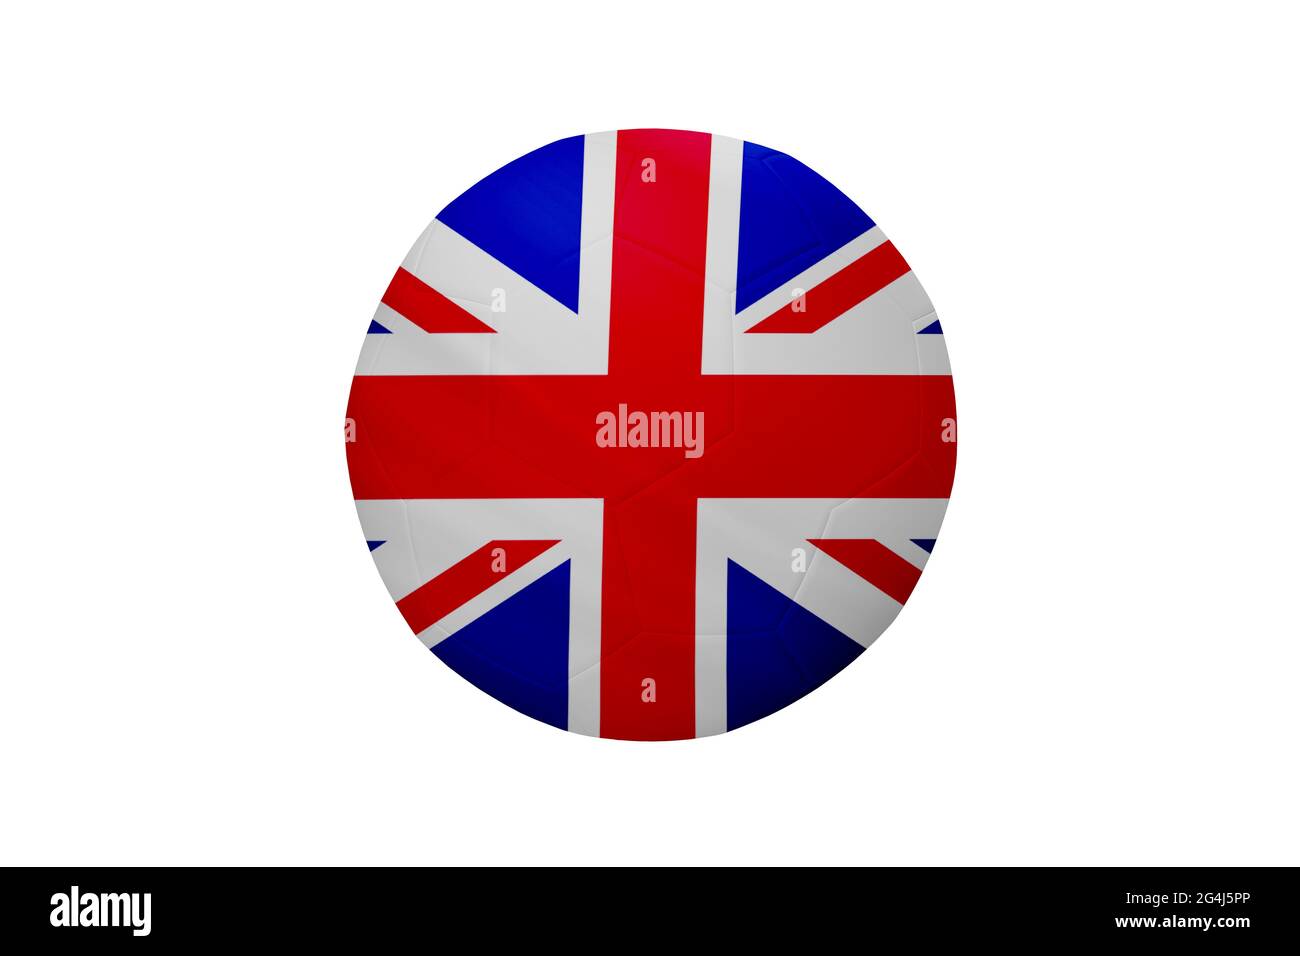 Fußball in den Farben der britischen Flagge auf weißem Hintergrund isoliert. In einem konzeptionellen Meisterschaftsbild, das Großbritannien unterstützt. Stockfoto